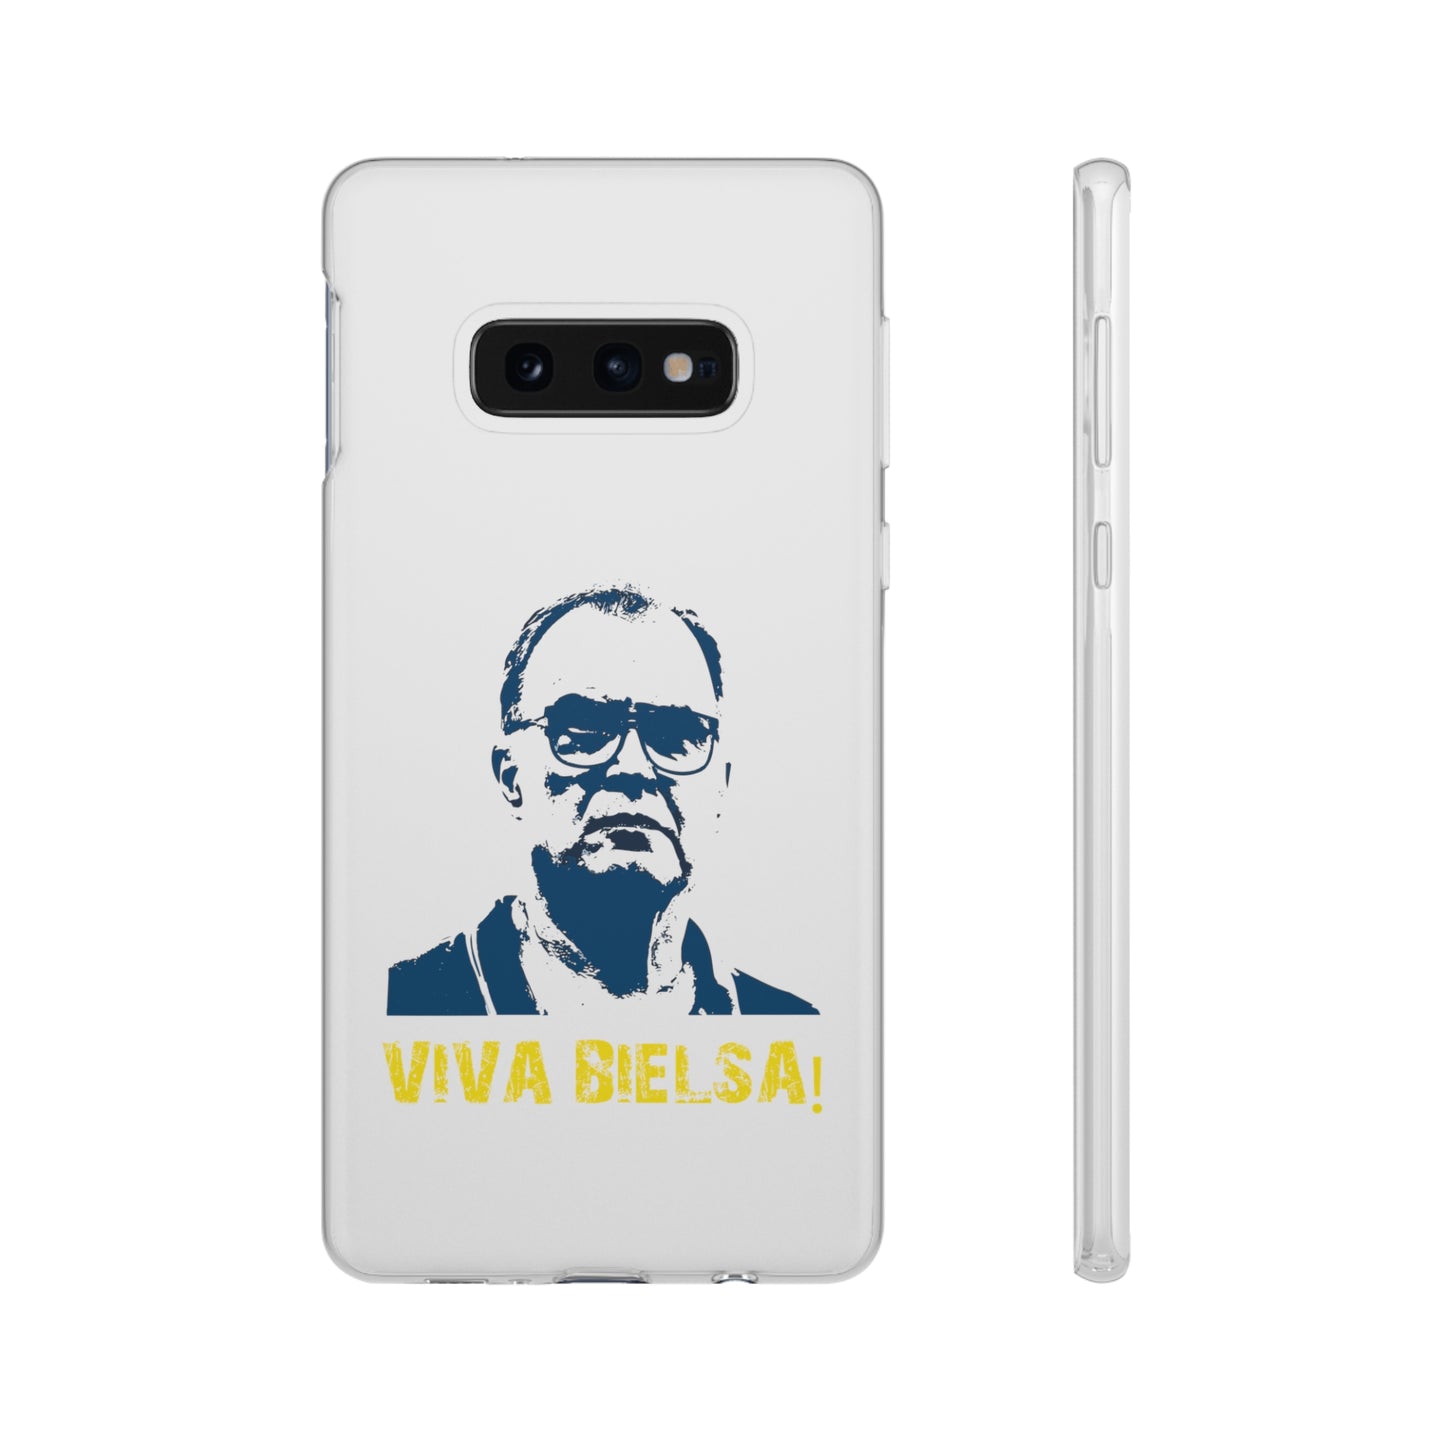 Flexi Case - Viva Bielsa!